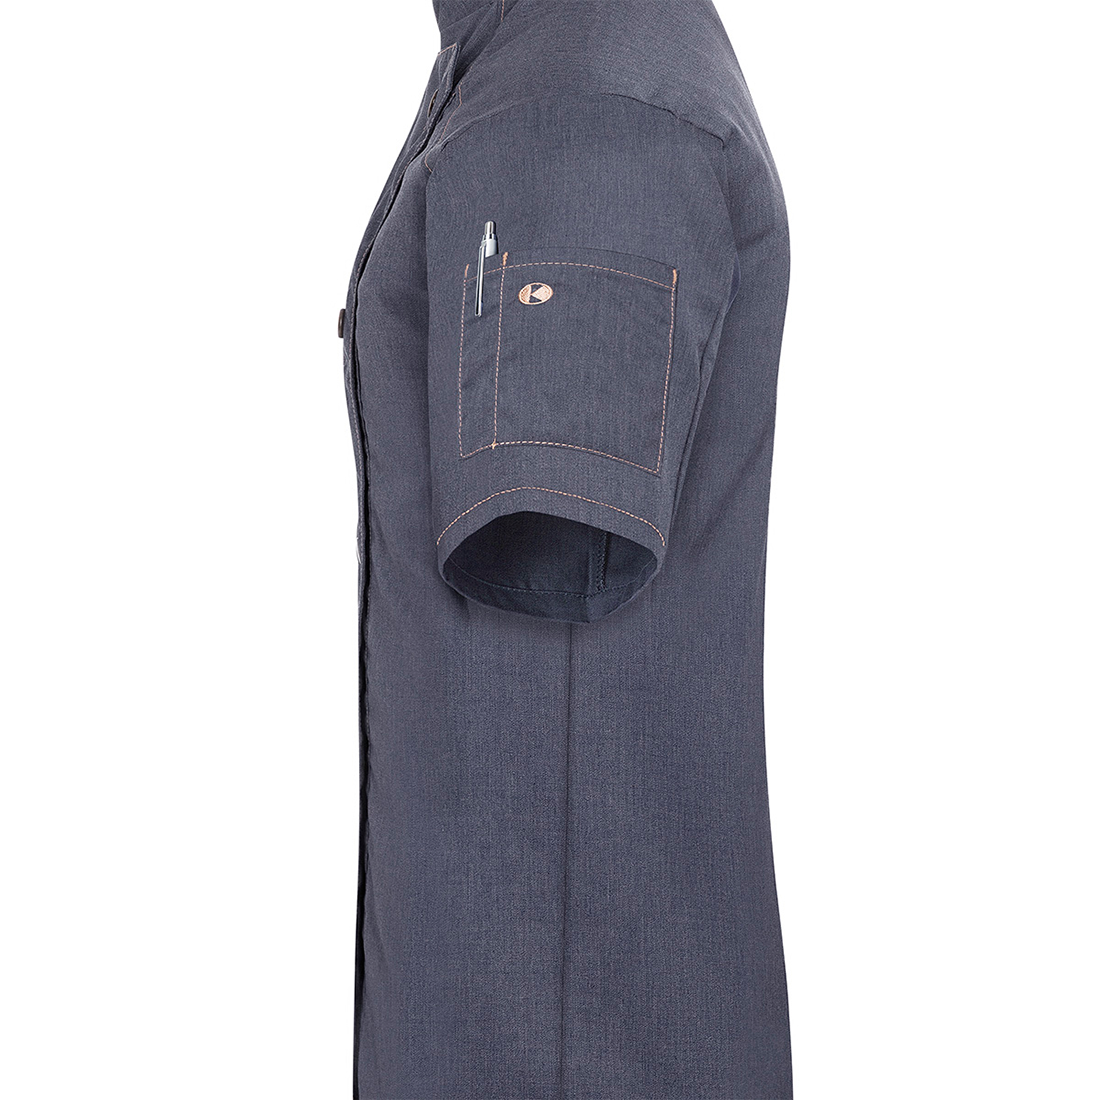 Veste de cuisine femme à manches courtes Jeans-Style - Les vêtements de protection